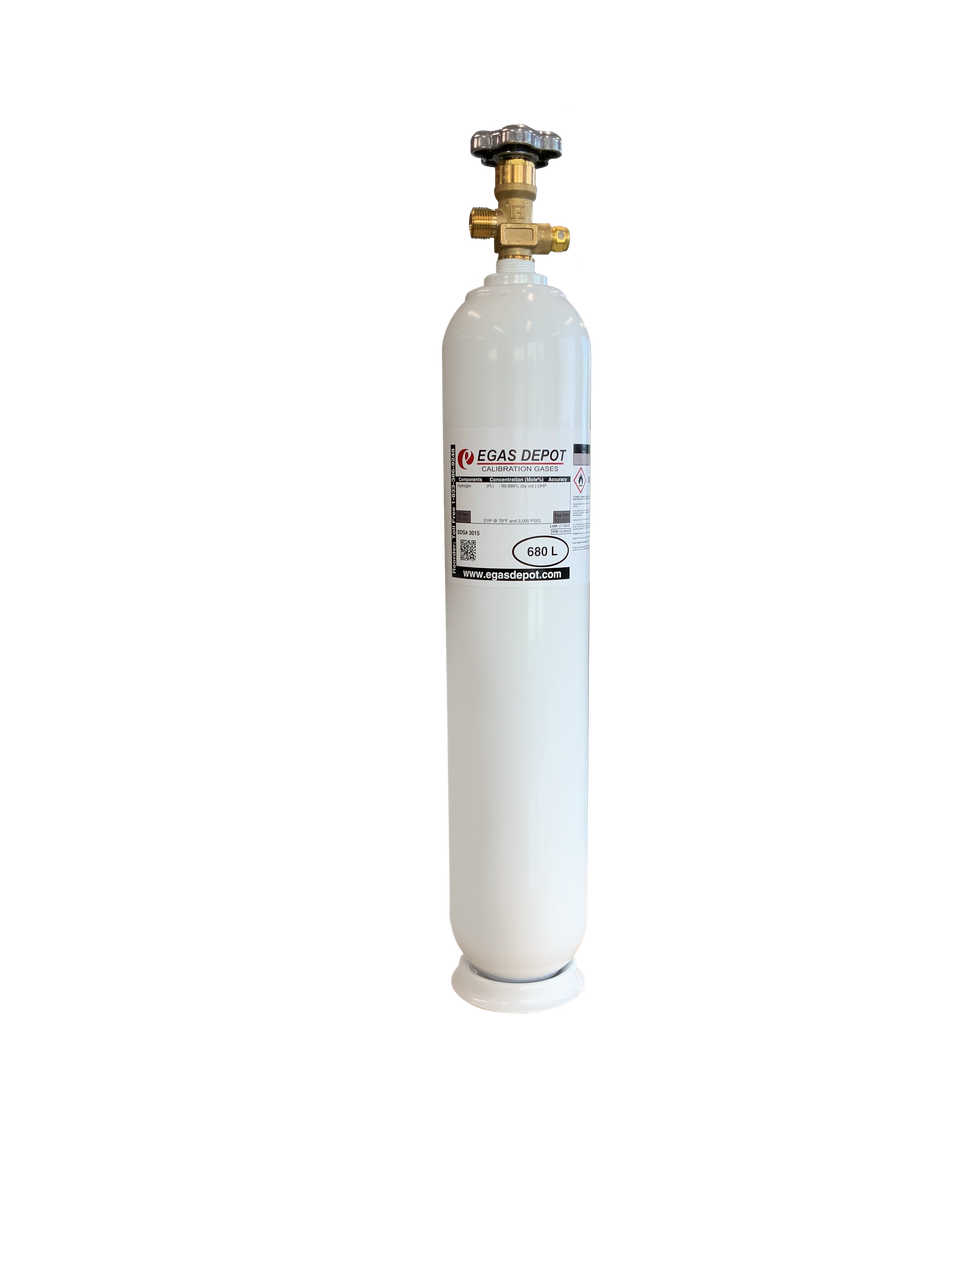 680 Liter-Carbon Monoxide 200 ppm/ Air